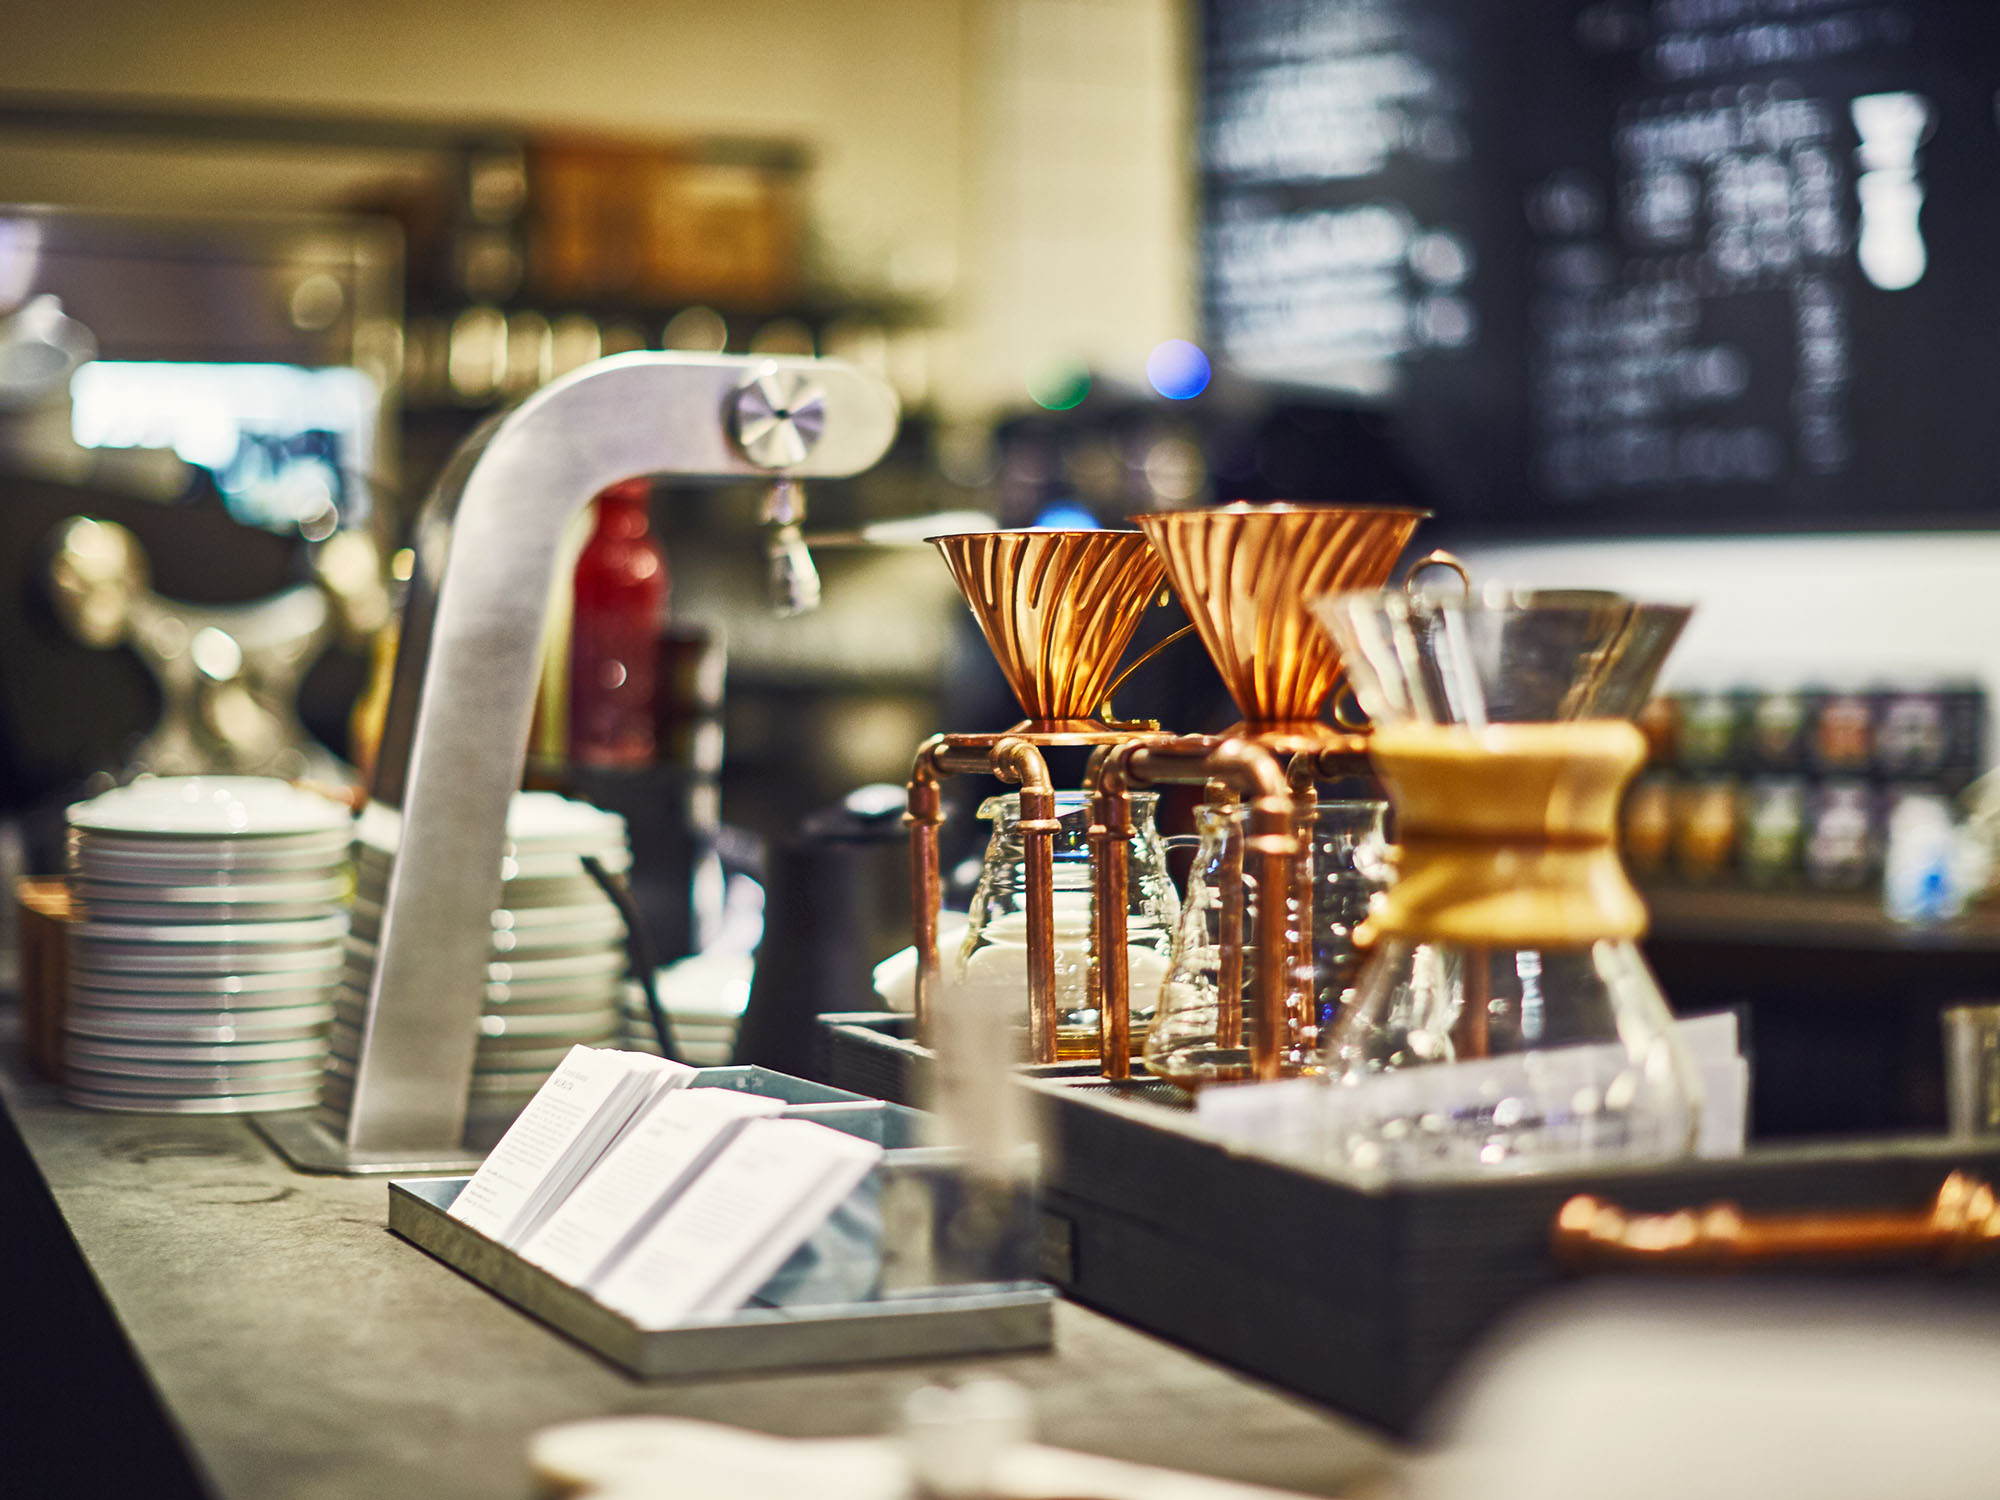 Dropkaffe-kannor på disken i ett kafé